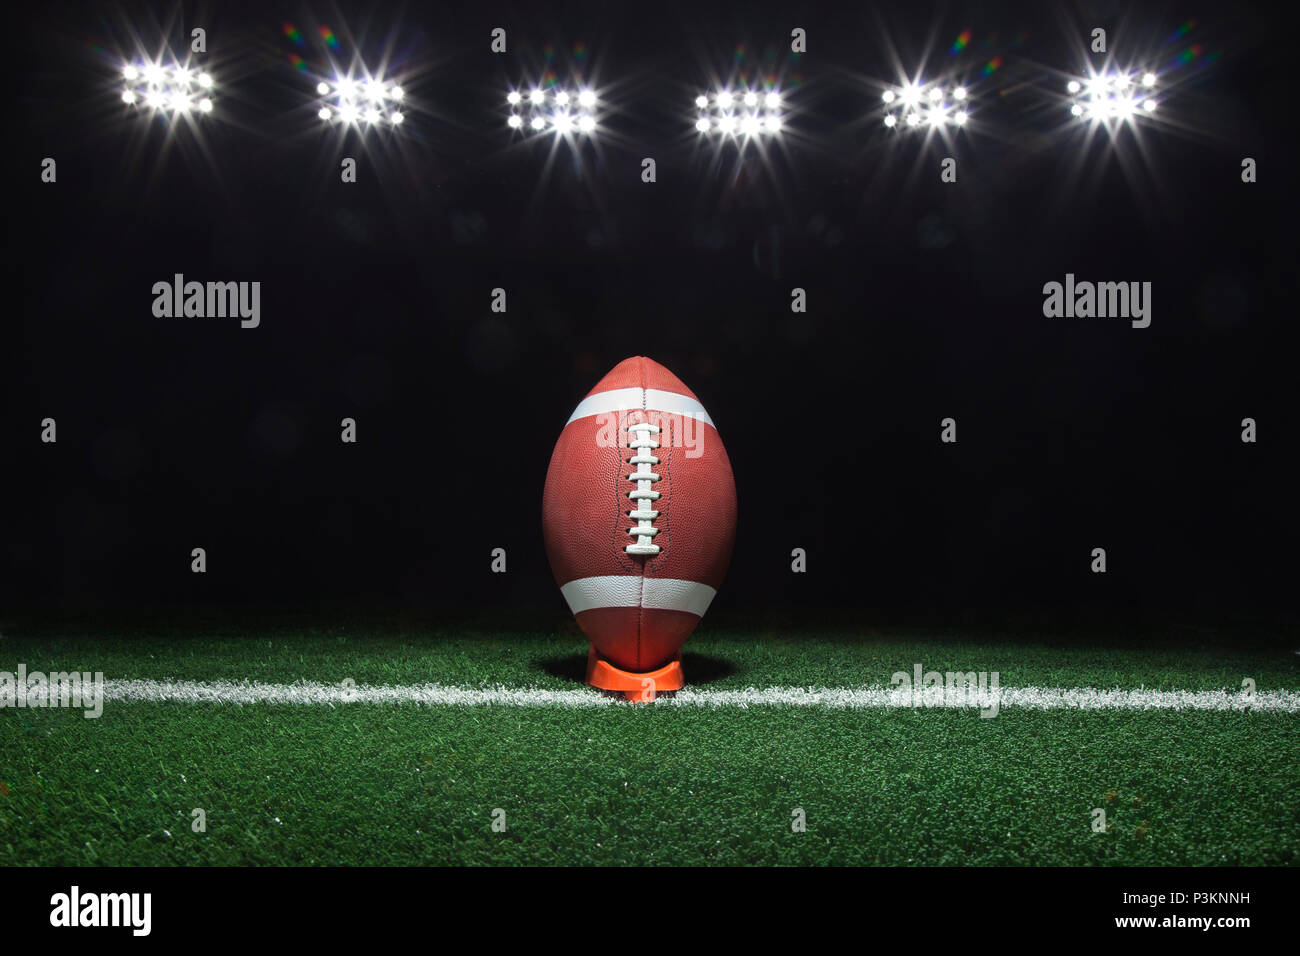 Ein Fußball auf einem T-Stück auf ein Yard Linie unter Lichter in der Nacht Stockfoto